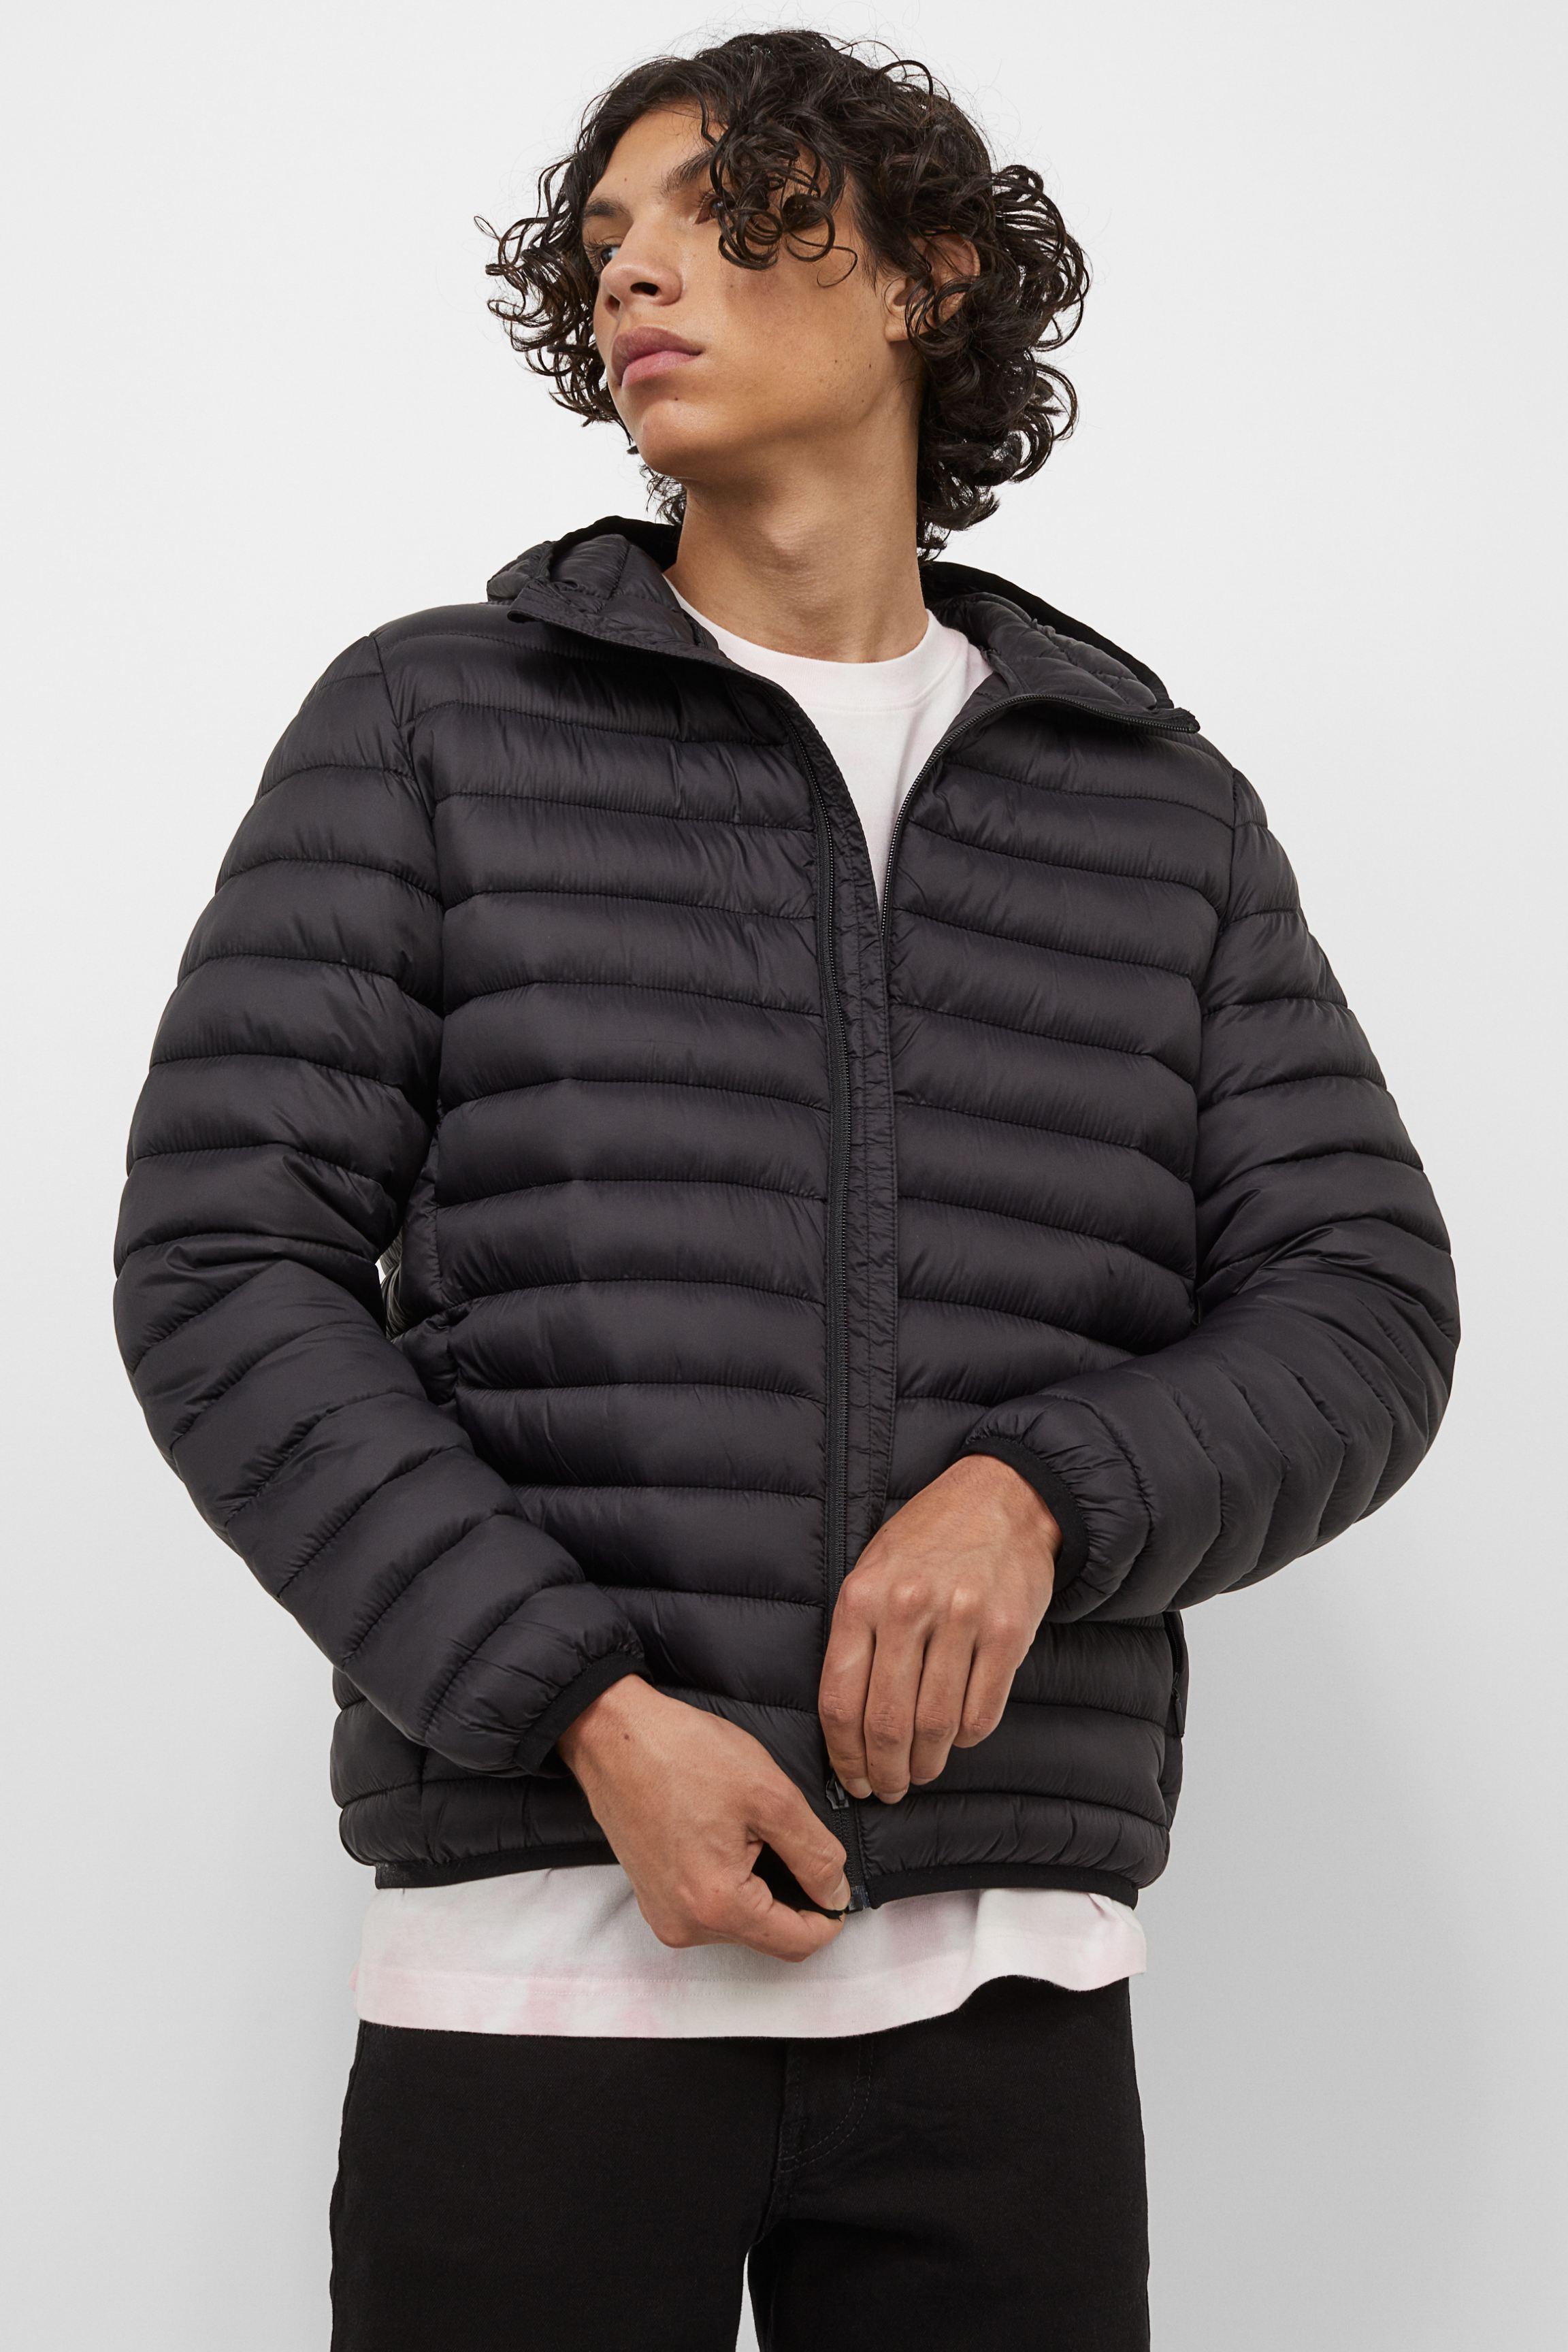 Discover more than 138 winter puffer jacket brands best - jtcvietnam.edu.vn